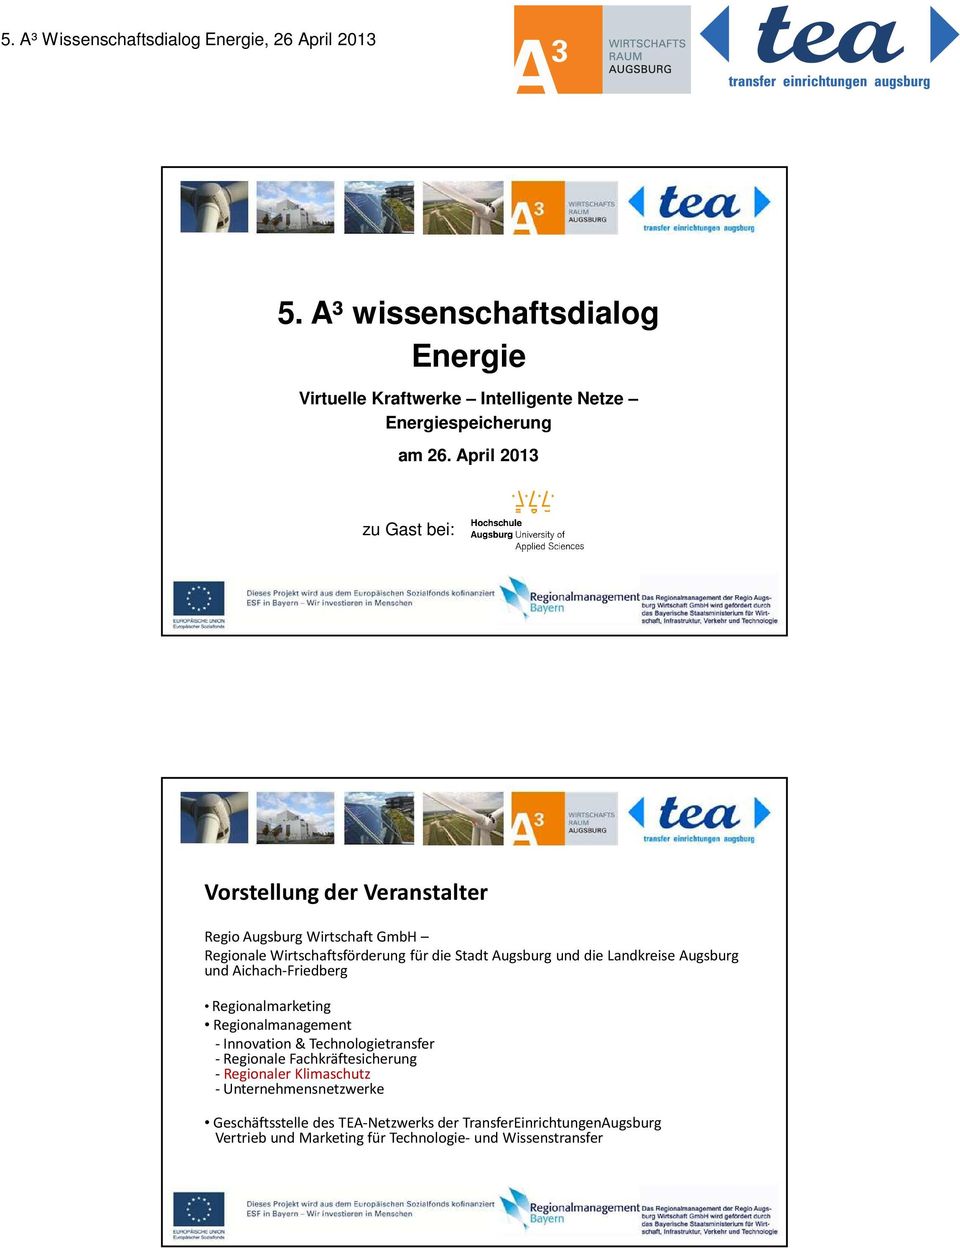 die Landkreise Augsburg und Aichach-Friedberg Regionalmarketing Regionalmanagement - Innovation & Technologietransfer - Regionale